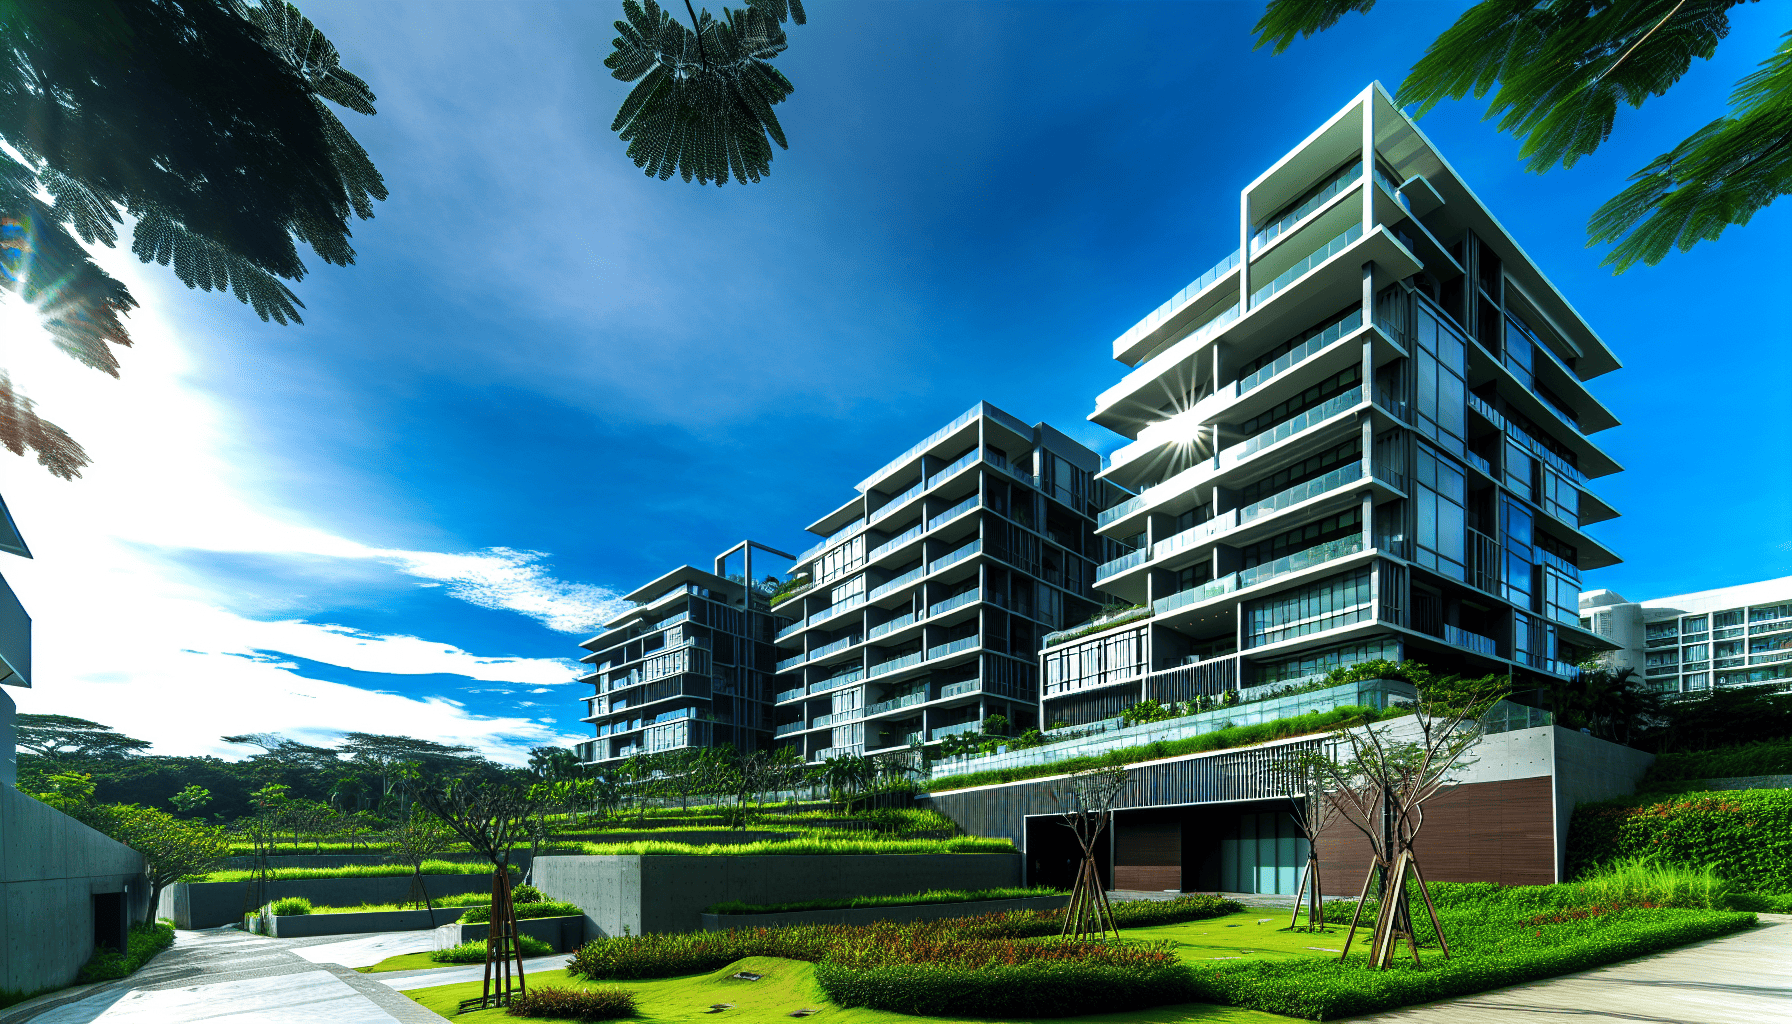 Modern condominium complex in the Philippines